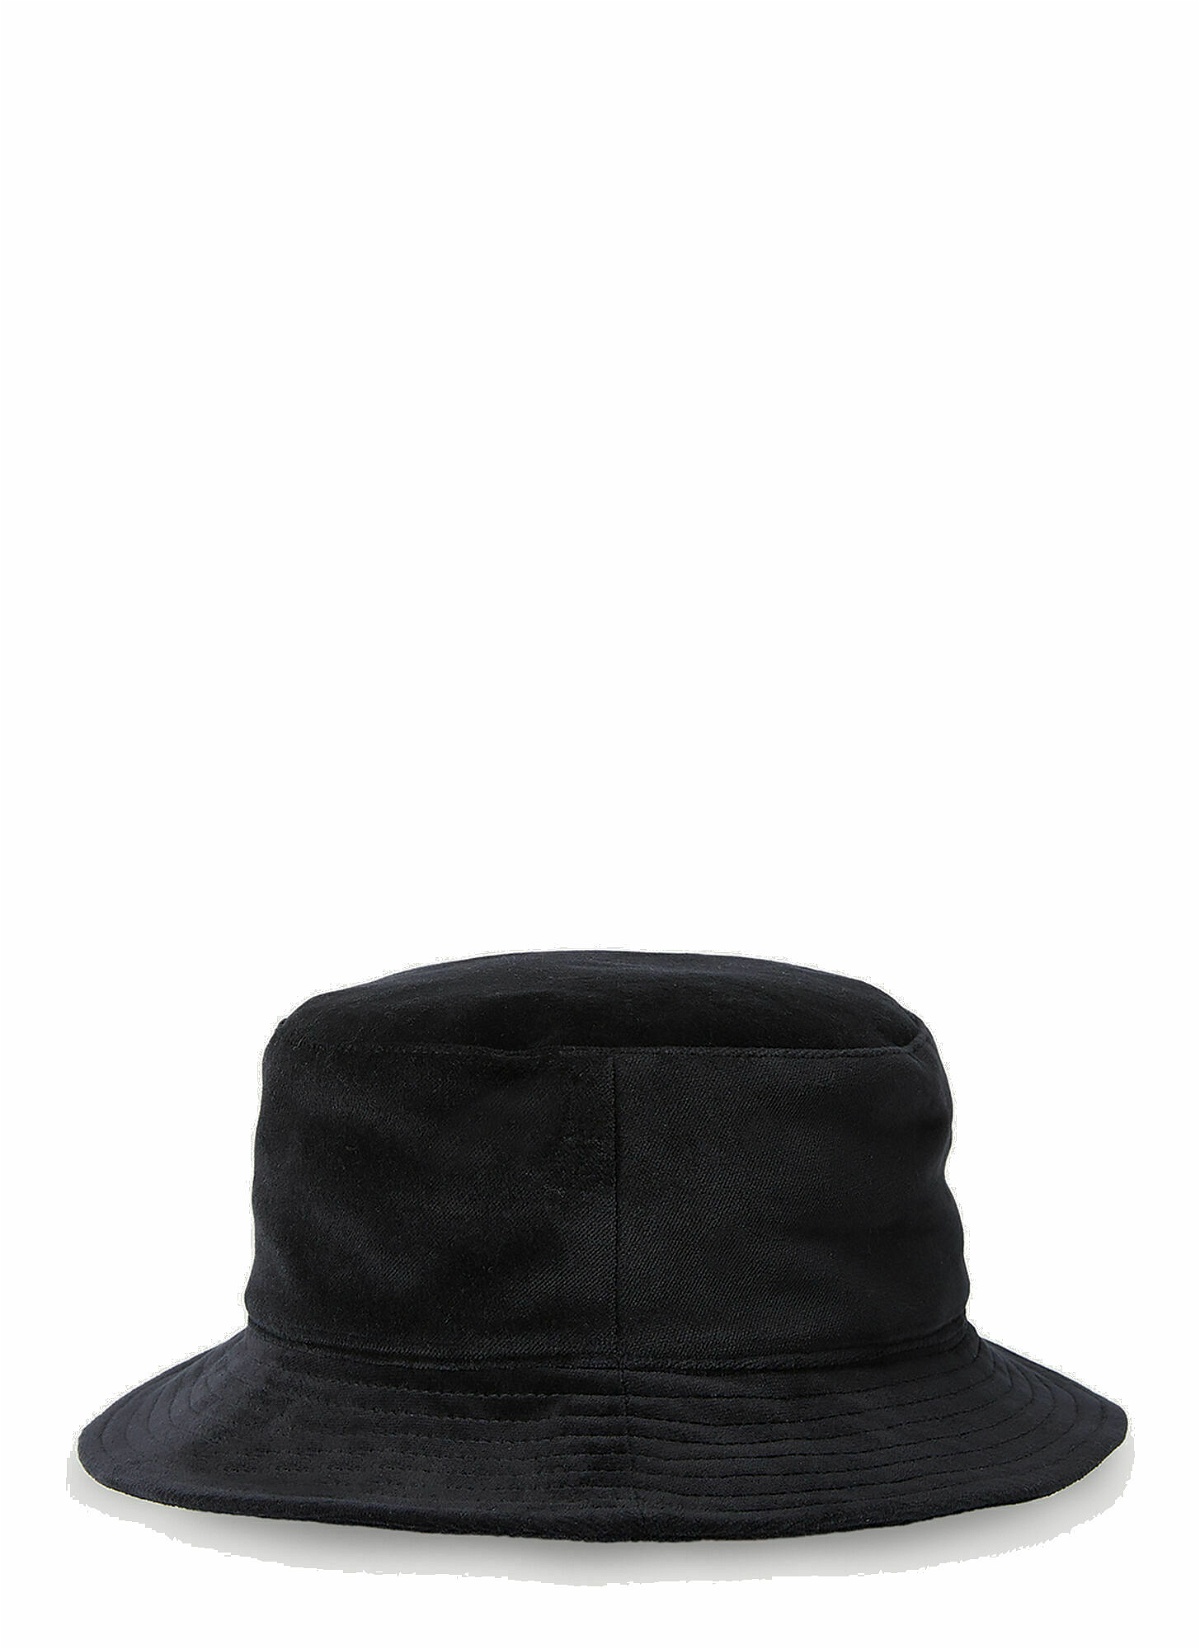 Gallery Dept. - Rodman Bucket Hat in Black Gallery Dept.